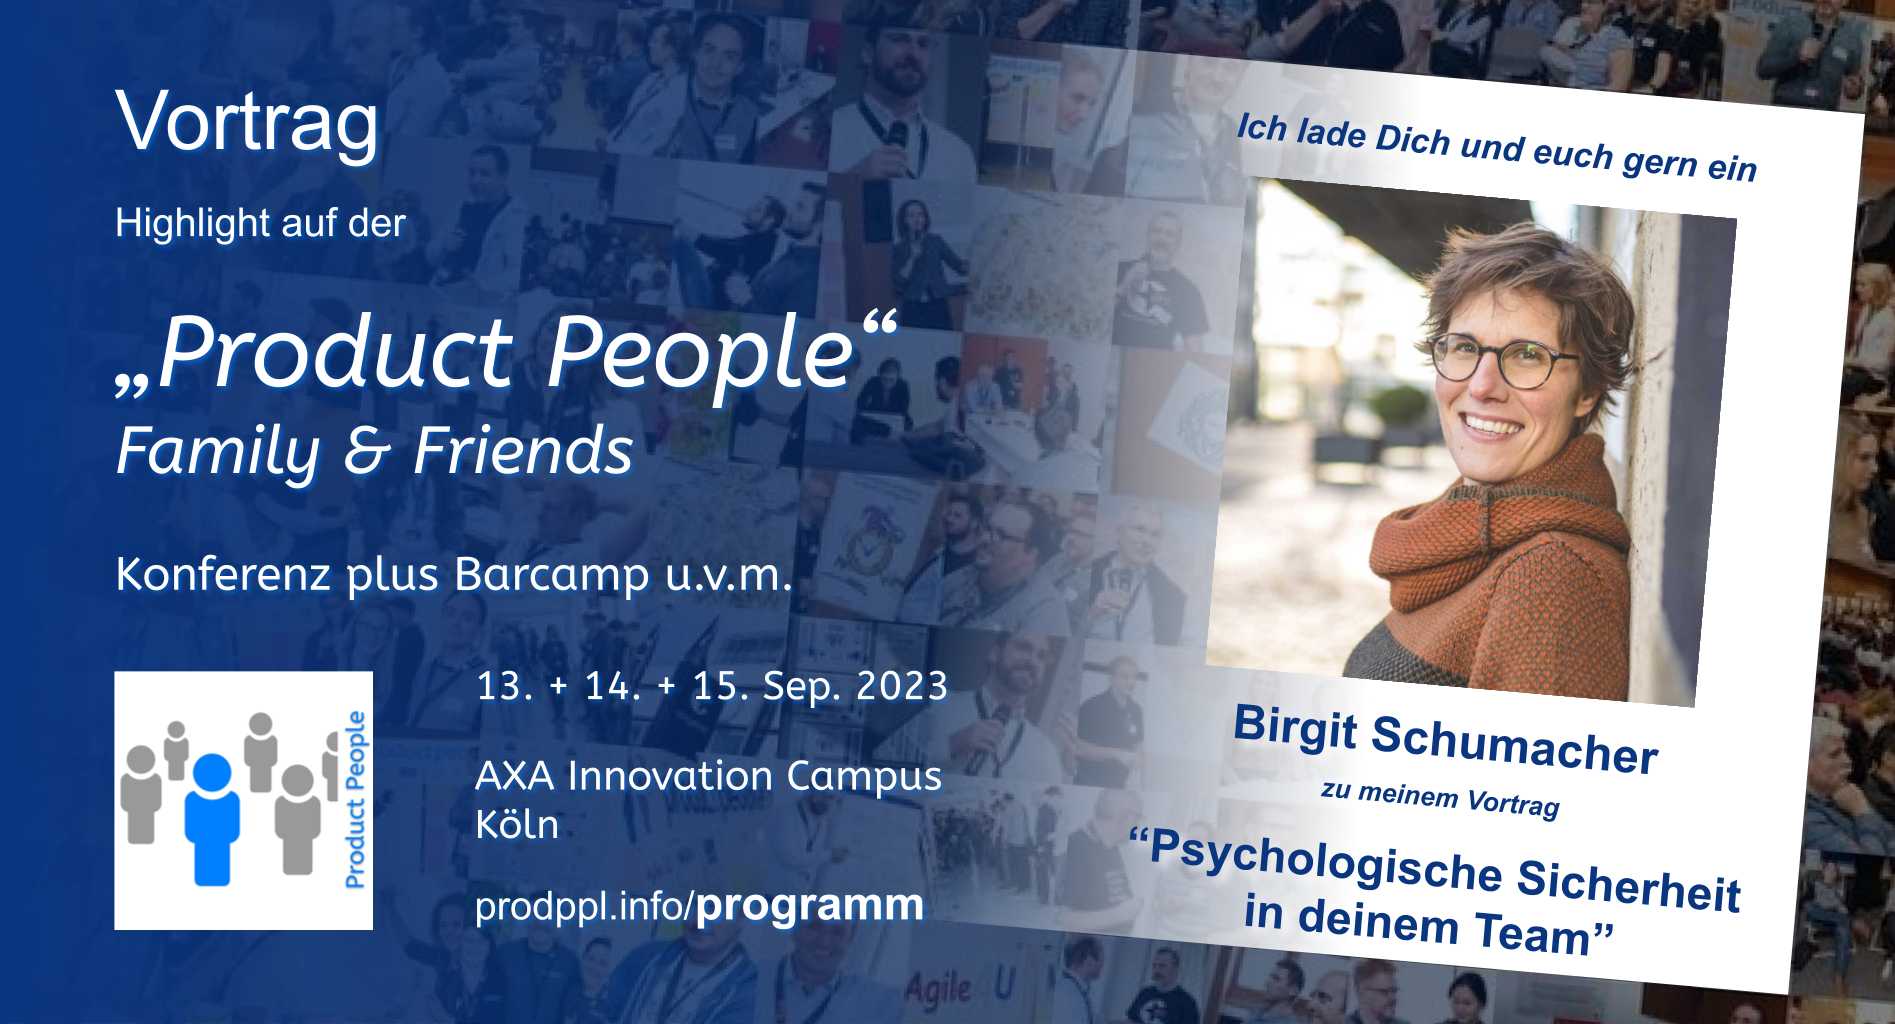 "Psychologische Sicherheit in deinem Team" - M-Vortrag von und mit Birgit Schumacher - auf der 'Product People - Family & Friends' - Konferenz plus Barcamp - Köln 2023